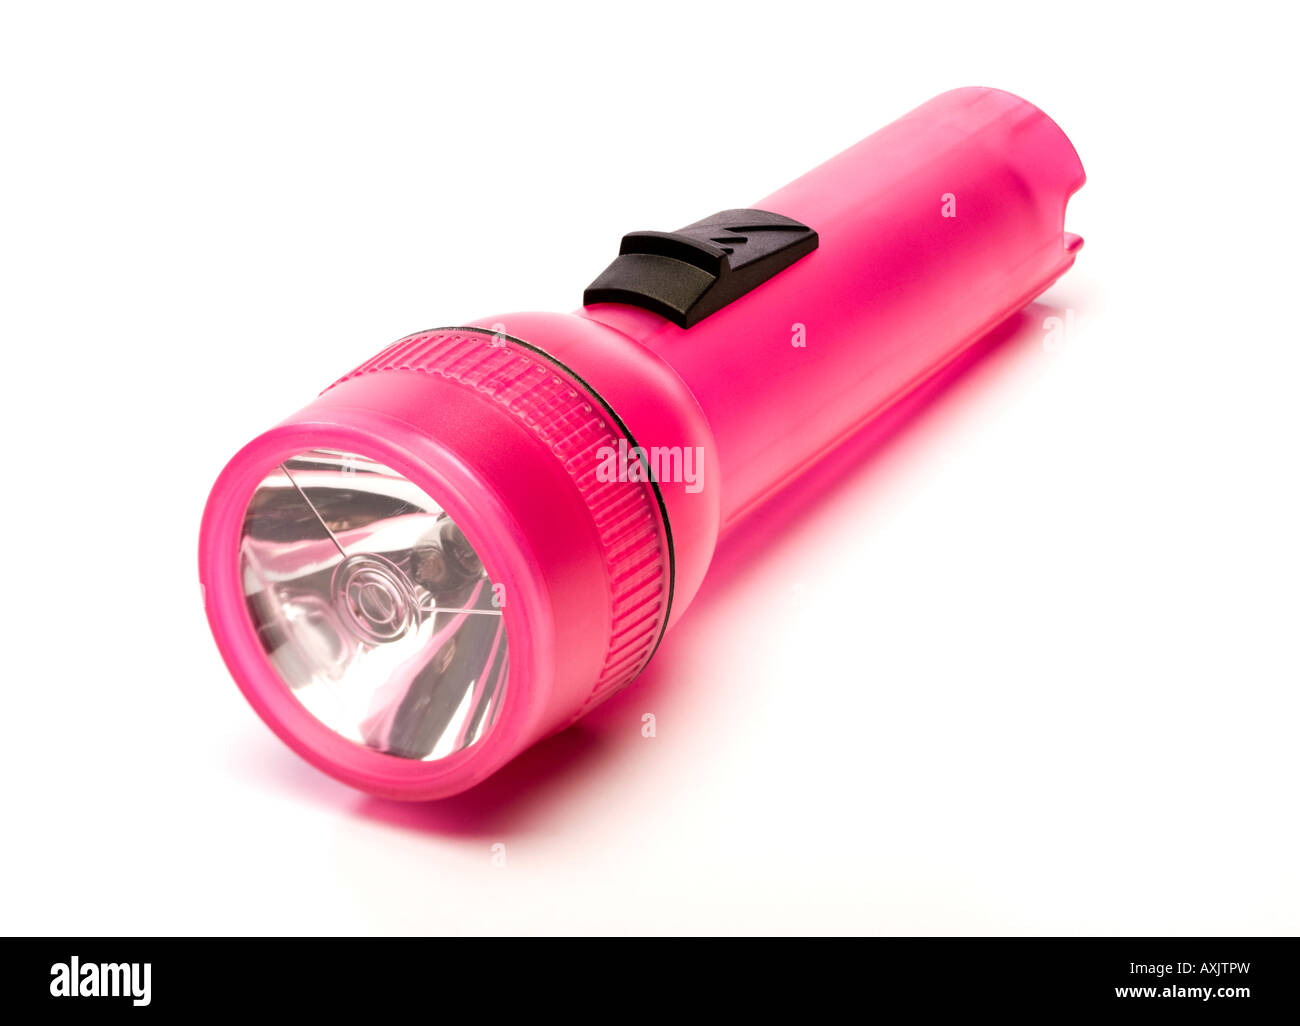 Linterna de batería de plástico rosa Foto de stock